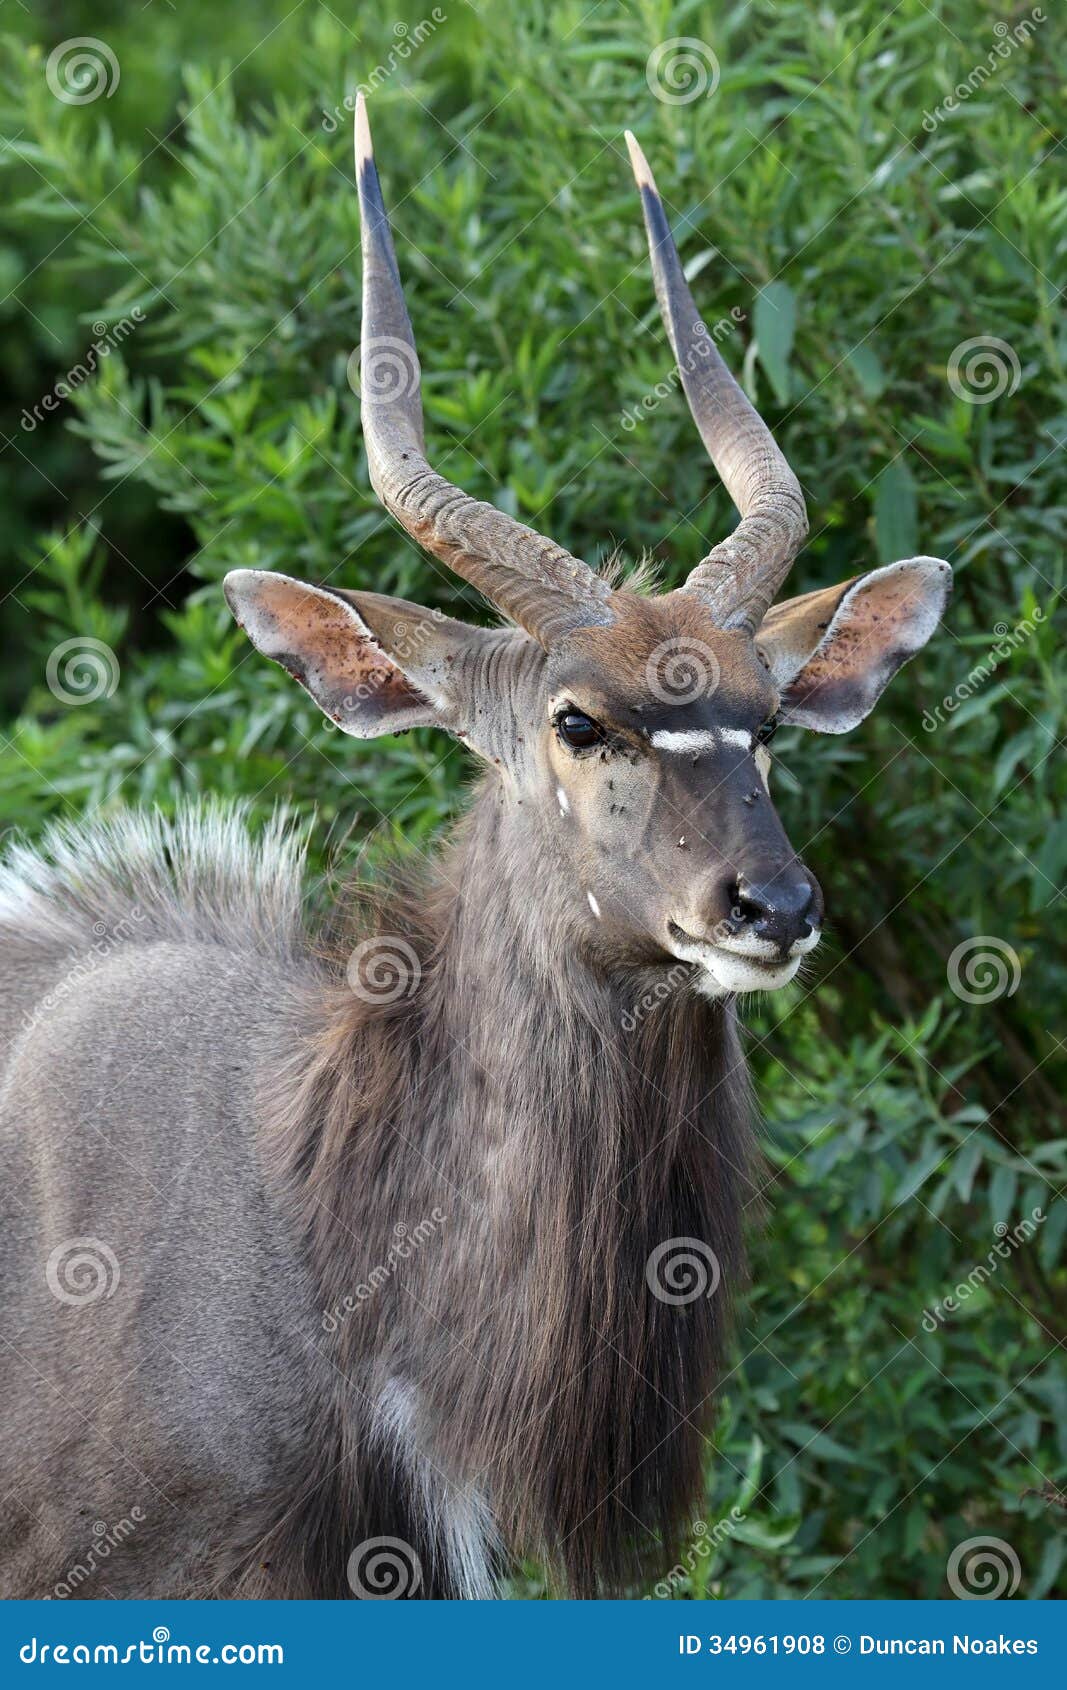 nyala antelope portrait